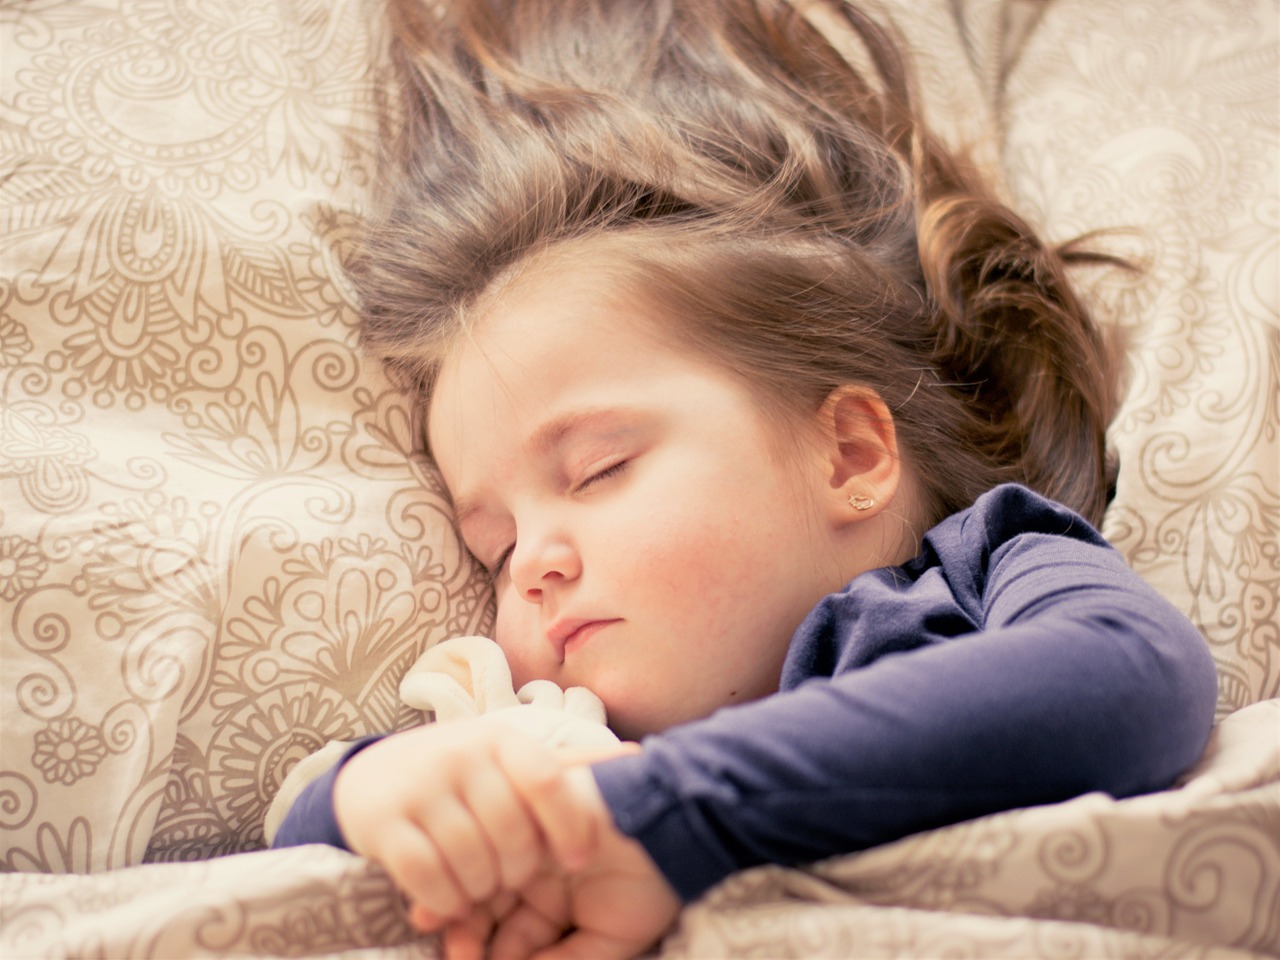 Діти, які недосипають, у дорослому віці більш схильні до кишкових захворювань  